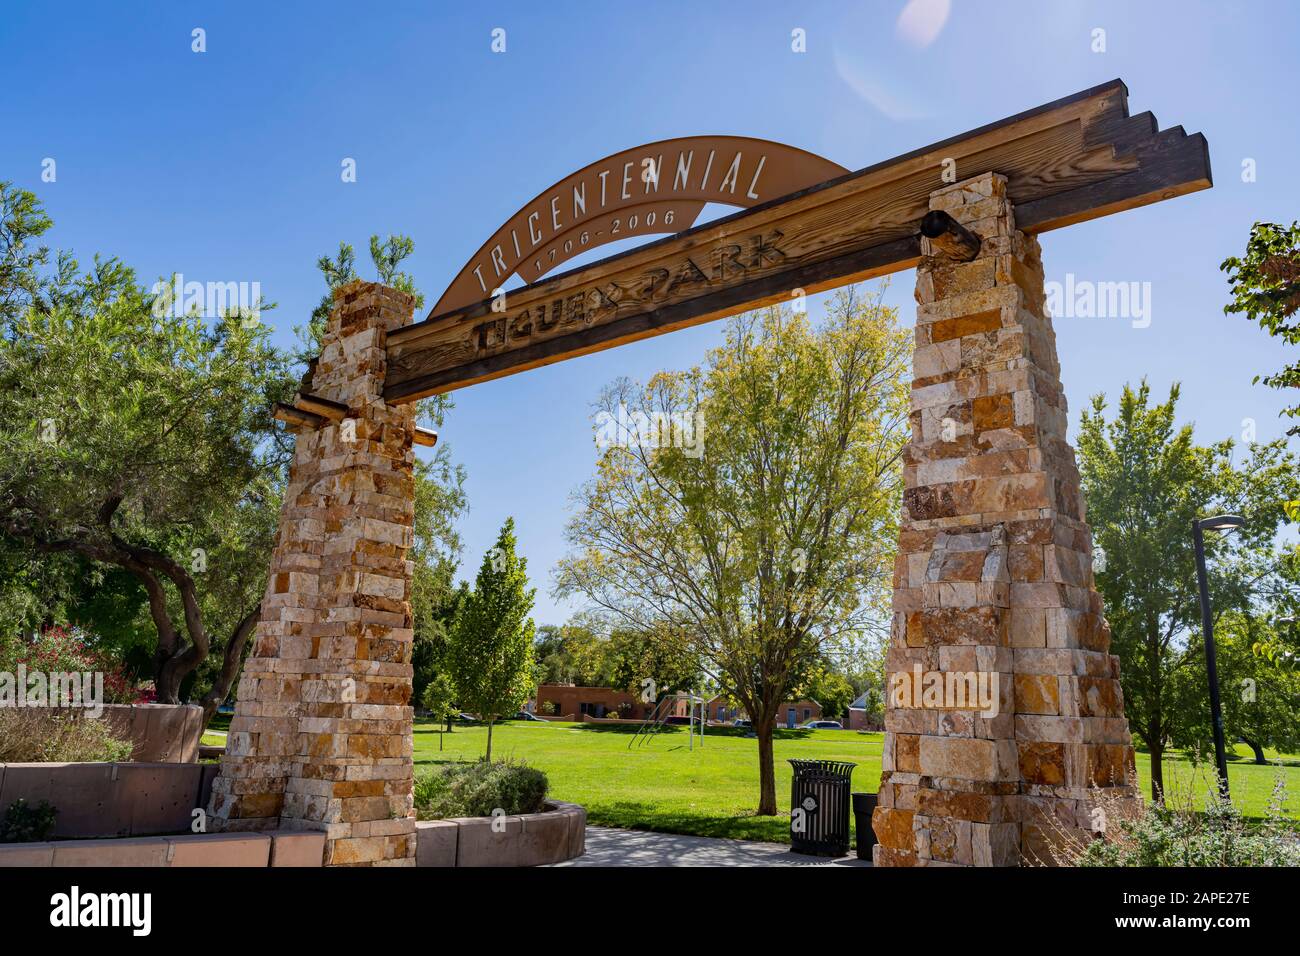 Entrance of the Tigux Park at Albuquerque, New Mexico Stock Photo